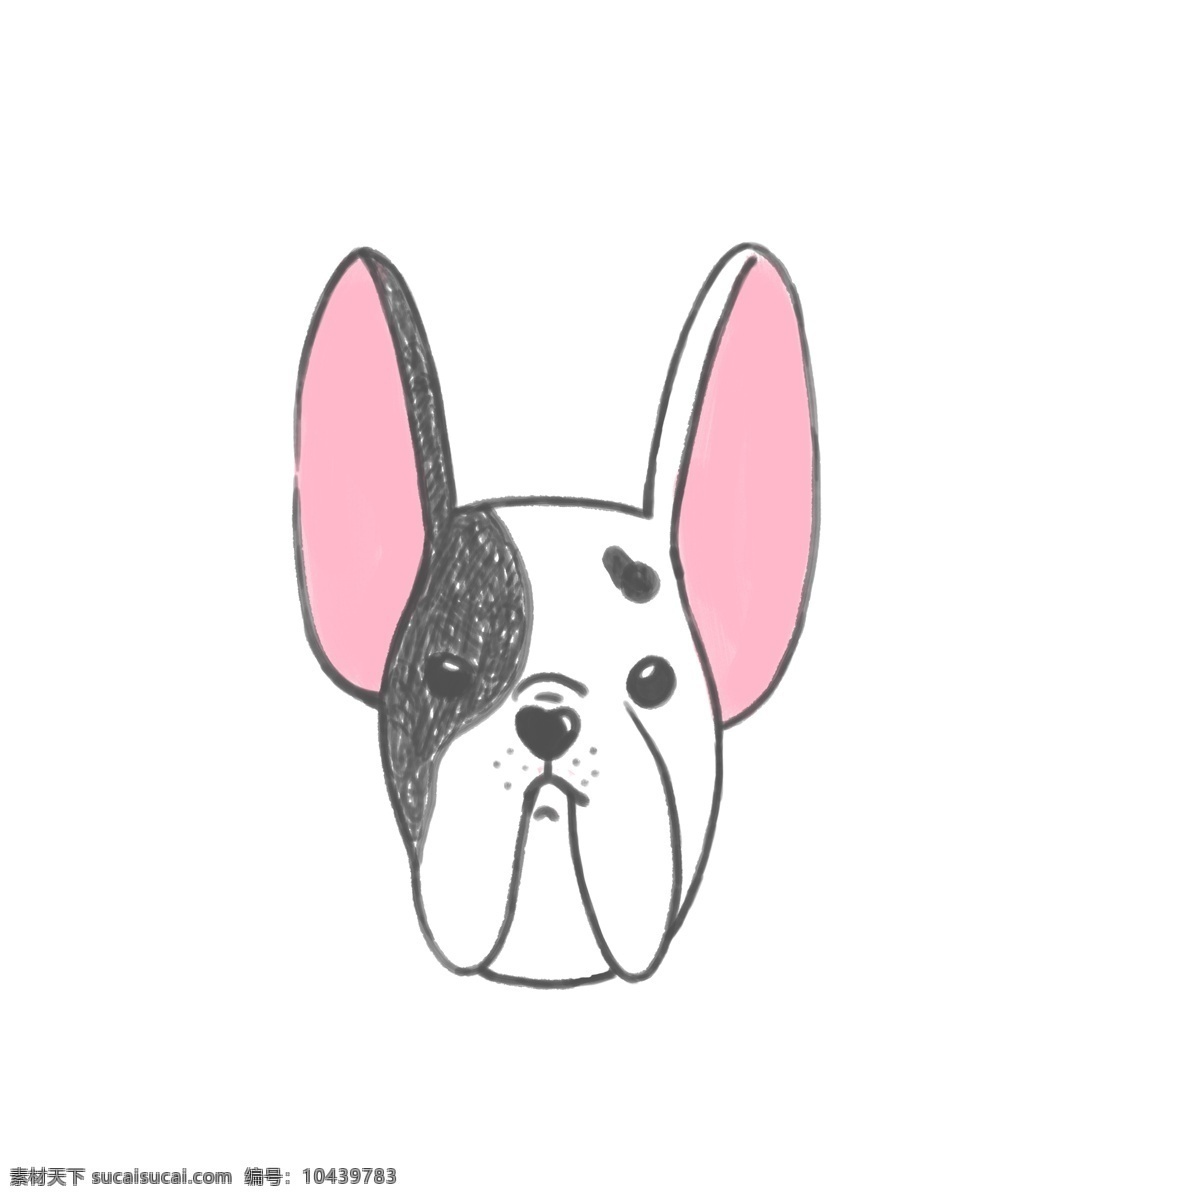 黑色 可爱 小狗 矢量 手绘 狗狗 头部 动物 宠物 黑色边 卡通 创意 简笔画